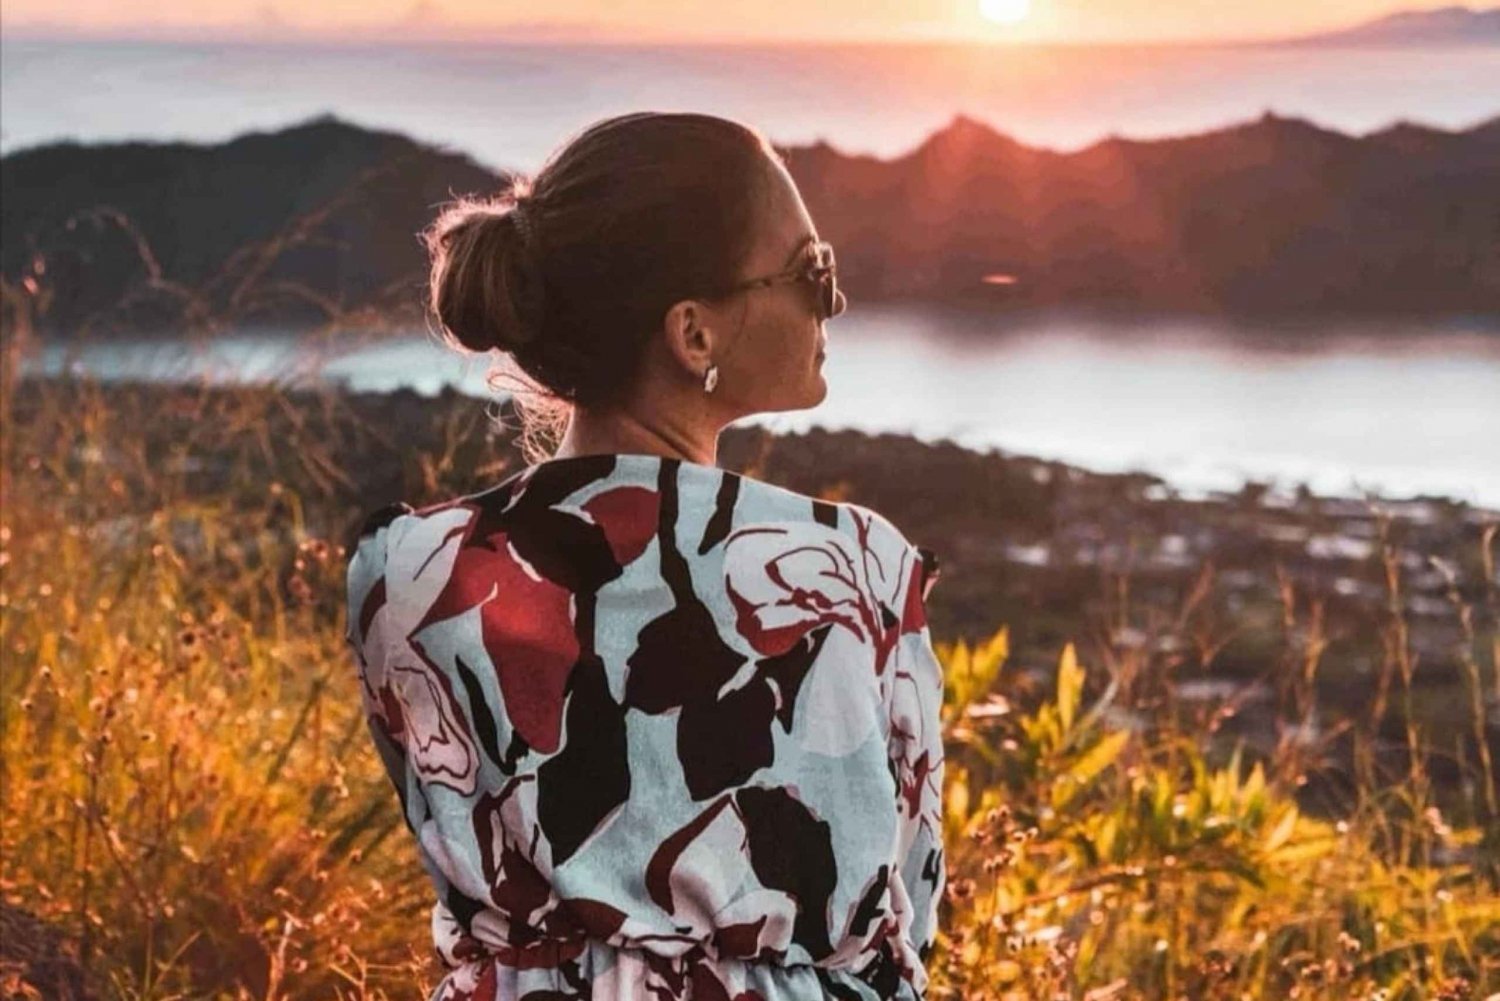 Ubud: Batur-vuoren auringonnousun vaellusretki